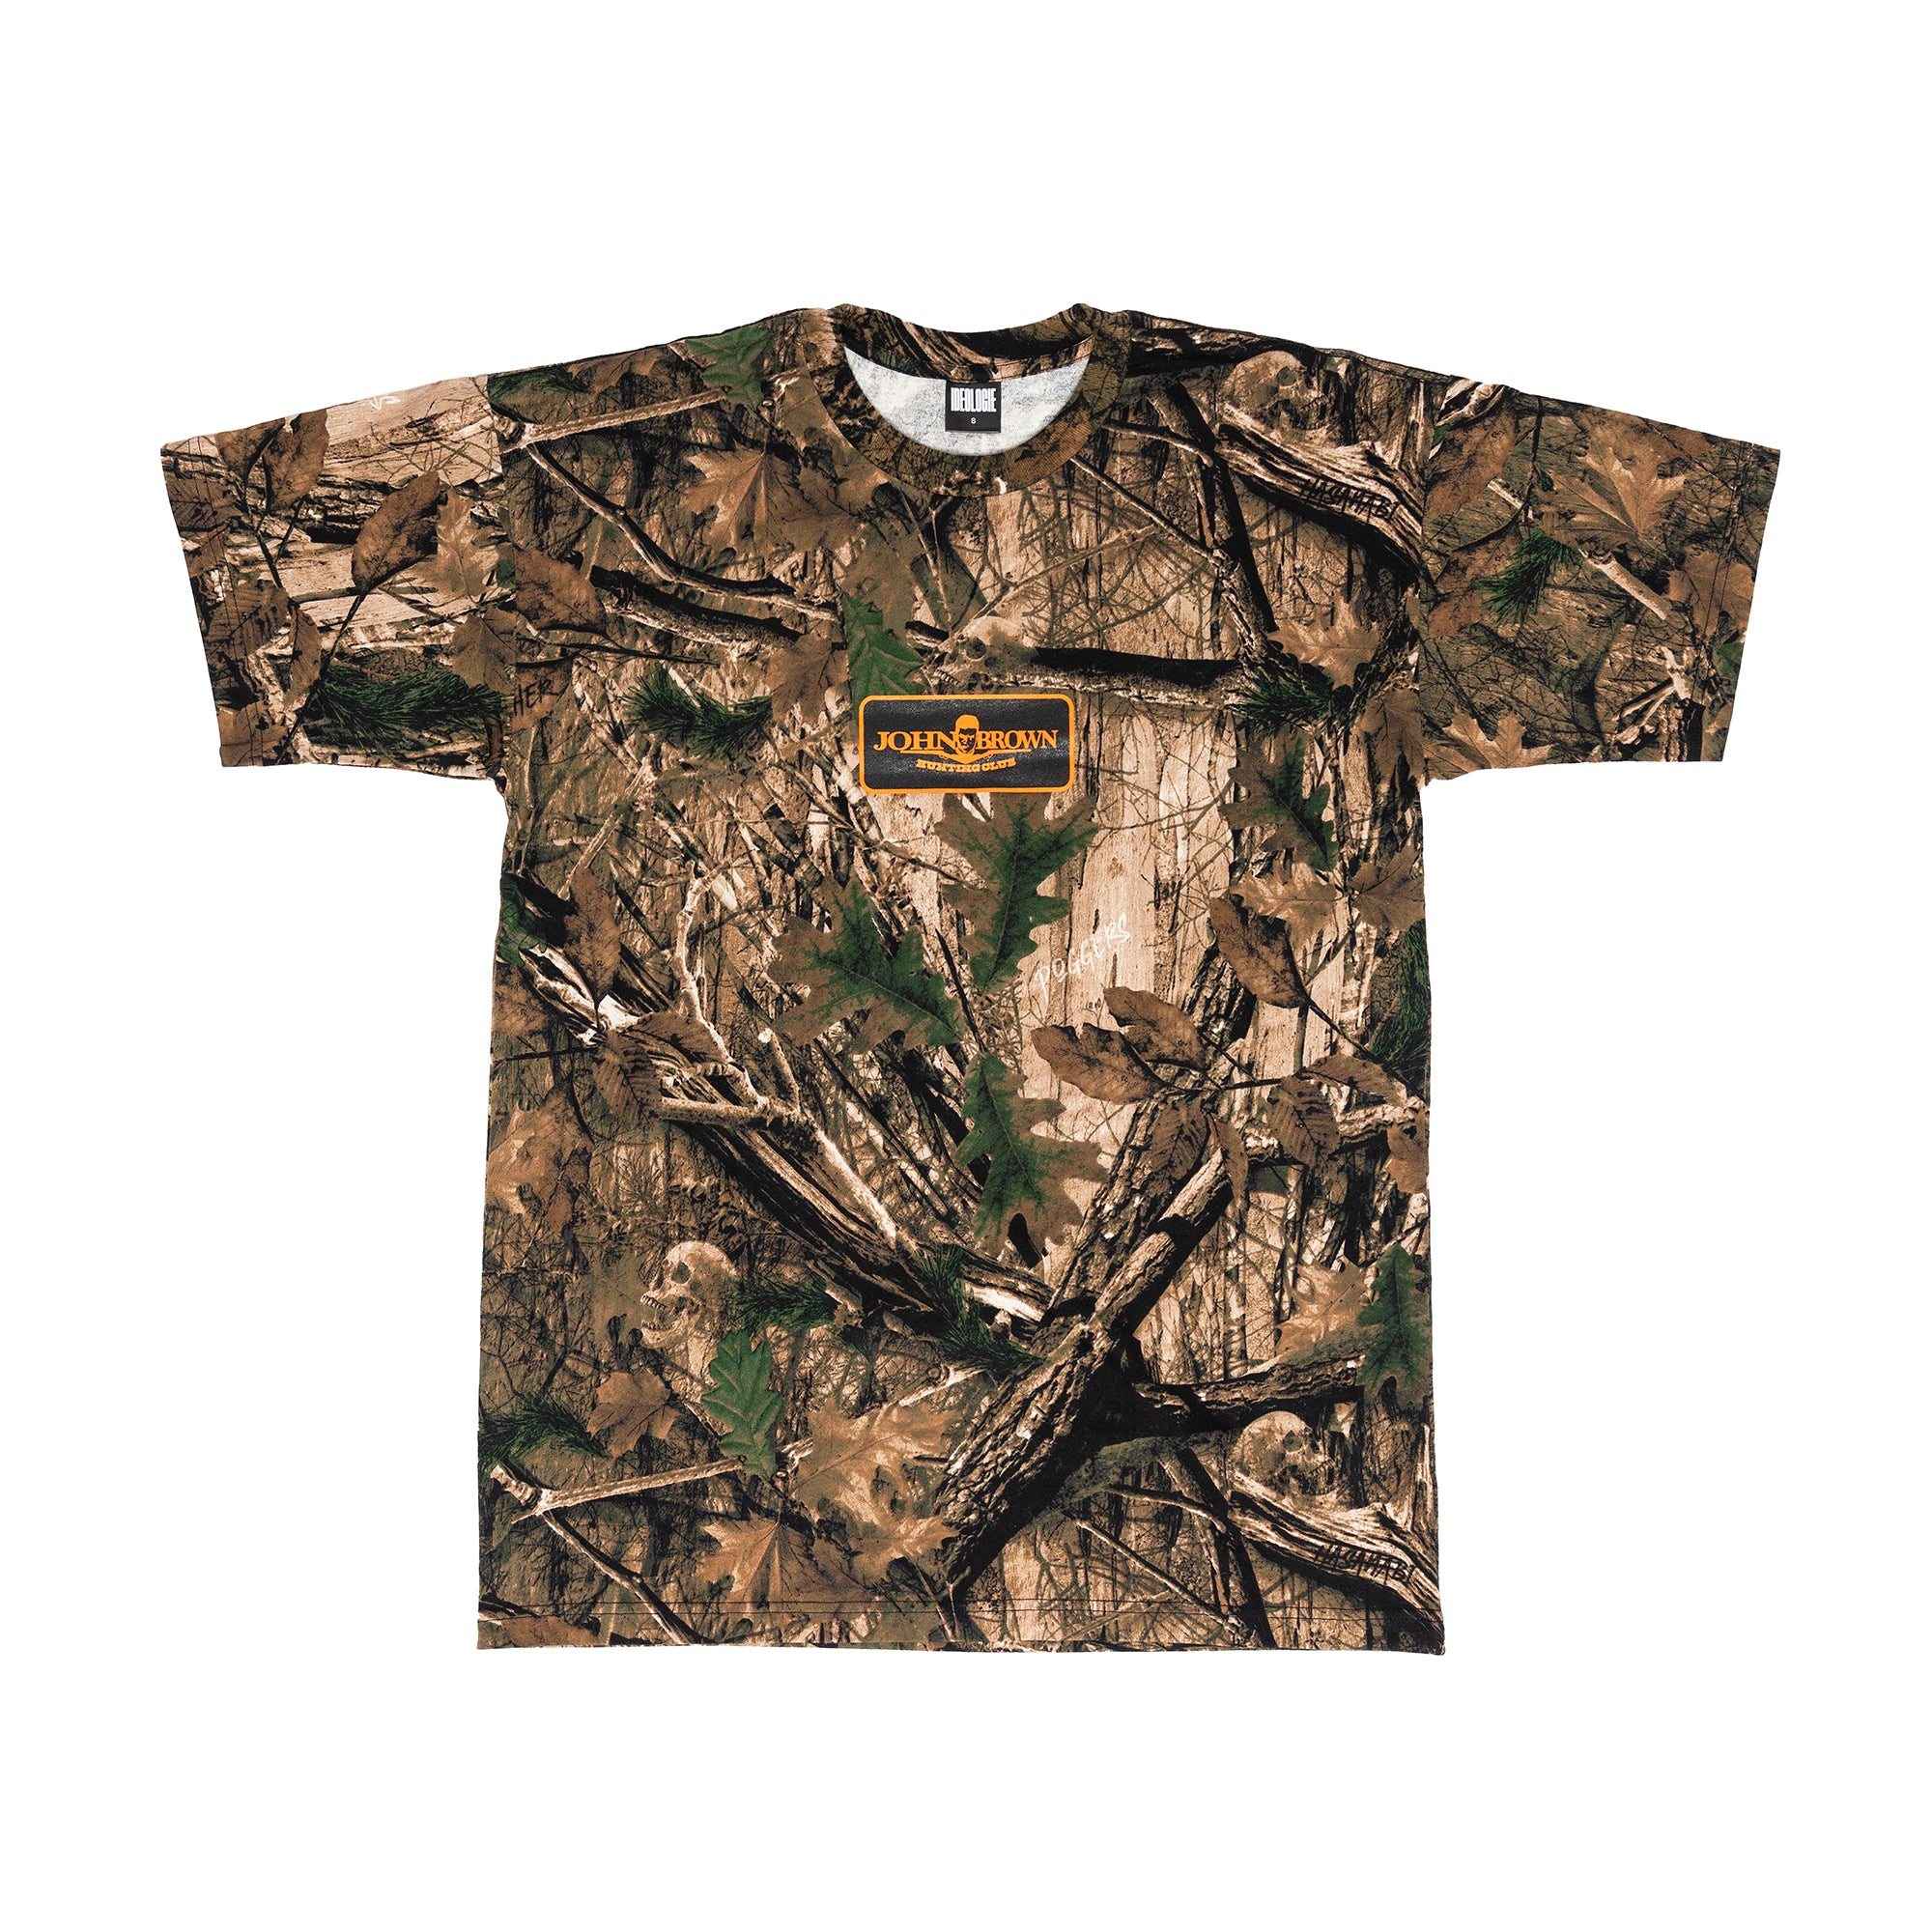 John Brown Hunting Club T-shirt